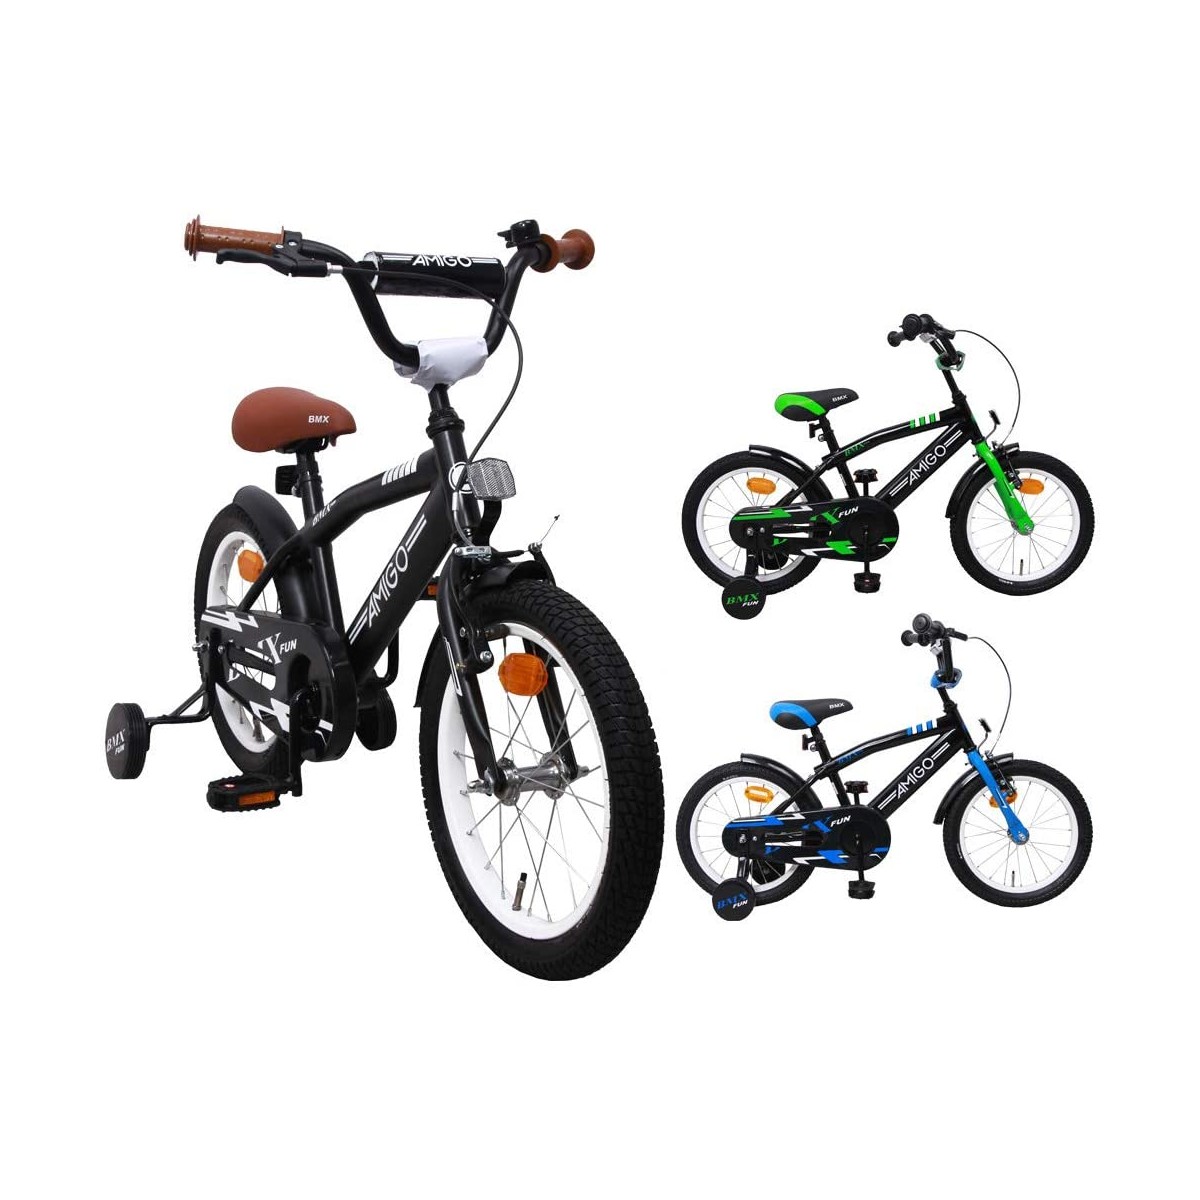 Nero/Giallo Bicicletta Bambini 16 AMIGO per 4-6 Anni - con stabilizzanti BMX Turbo